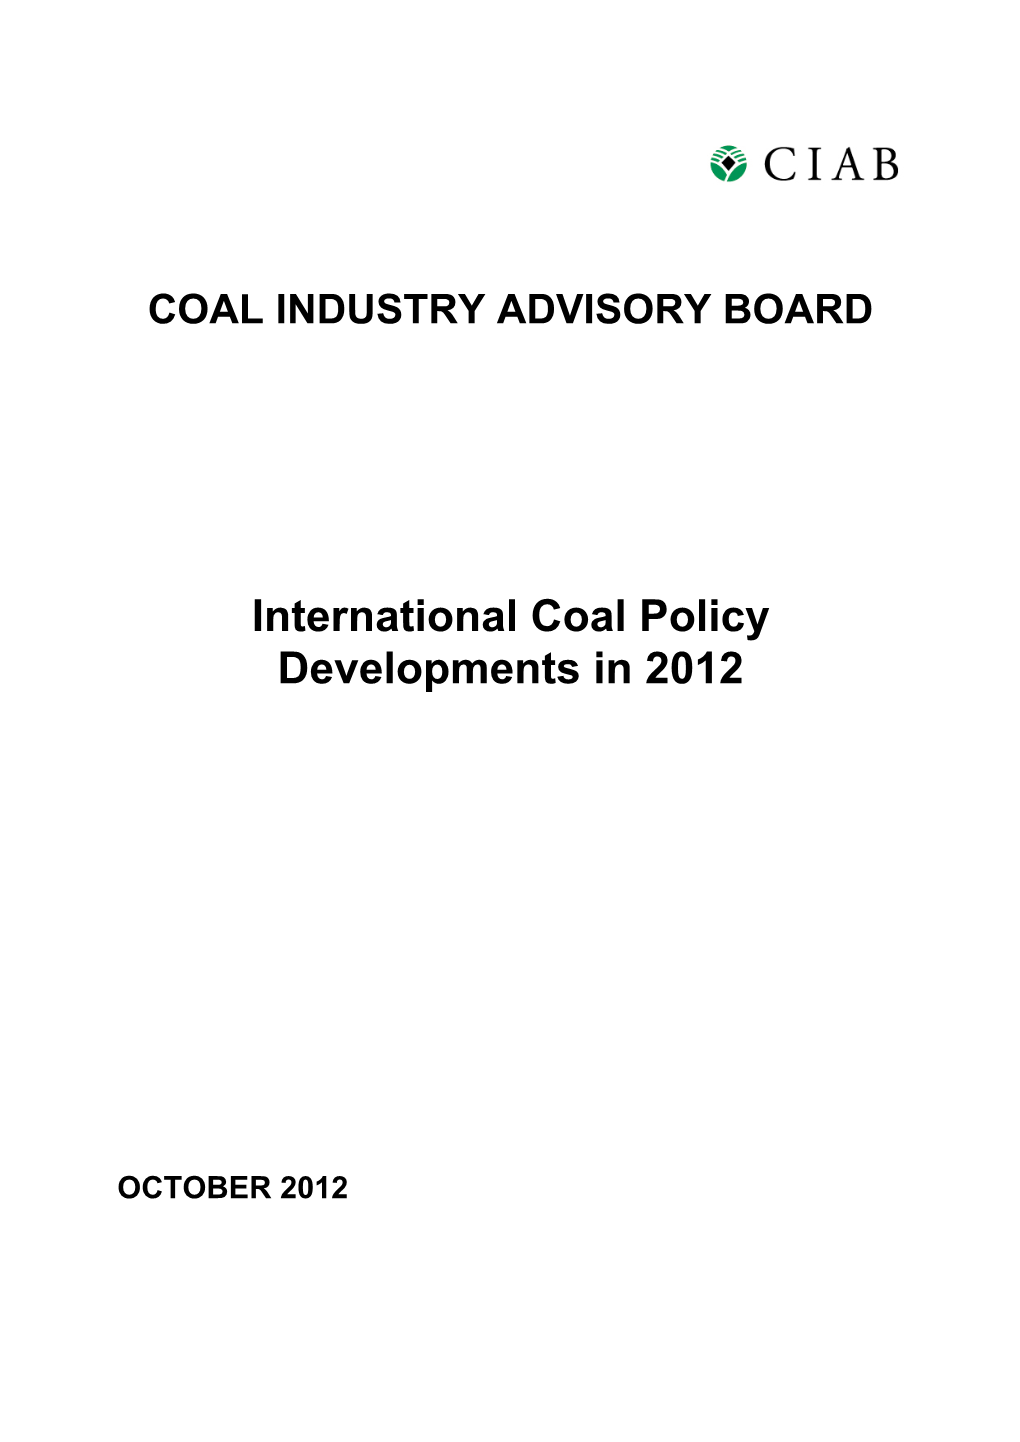 CIAB Market & Policy Developments 2005/06